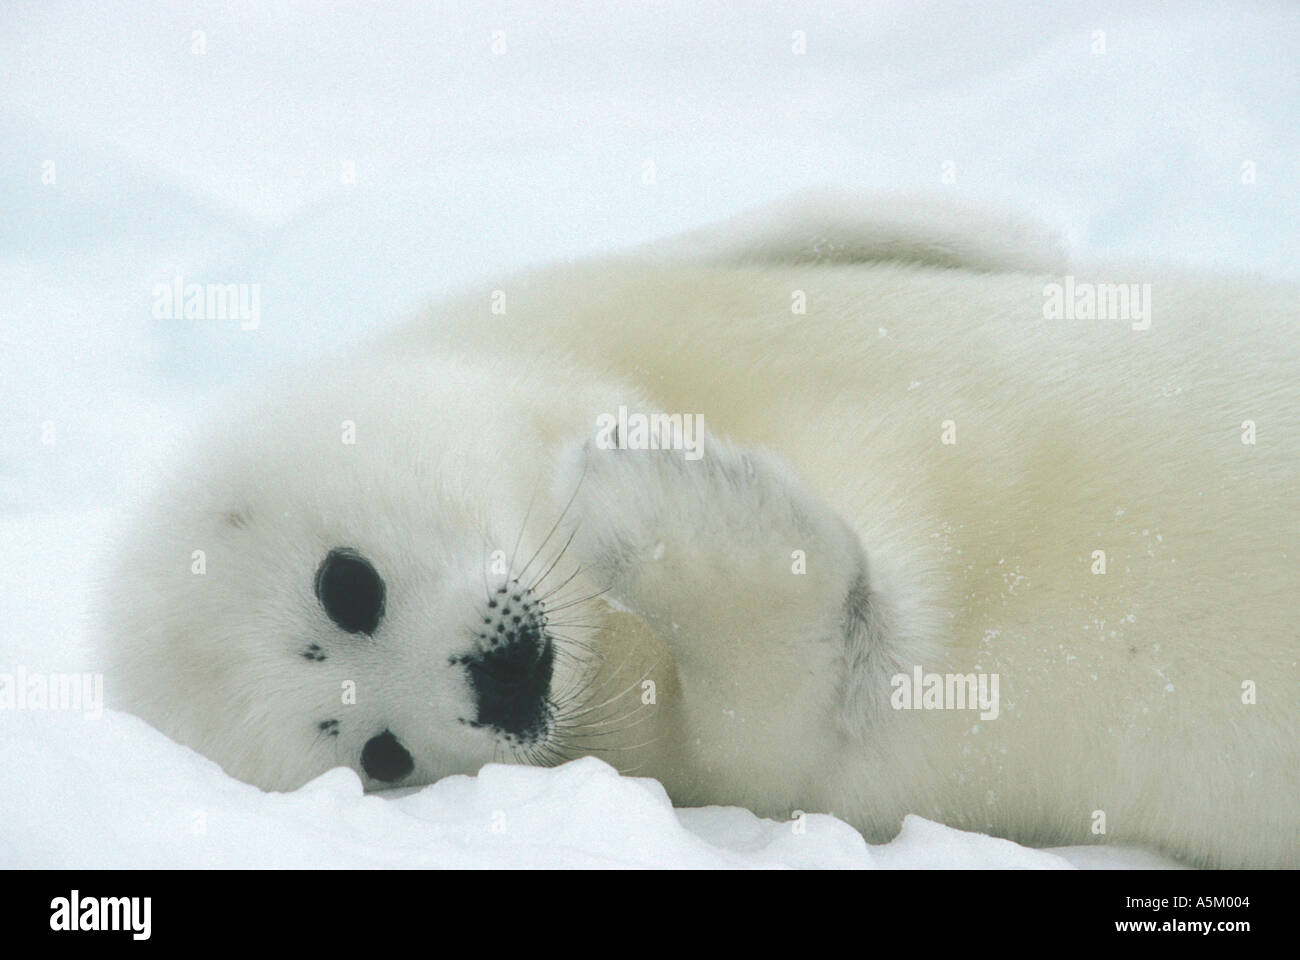 Harp seal pup on ice Stock Photo